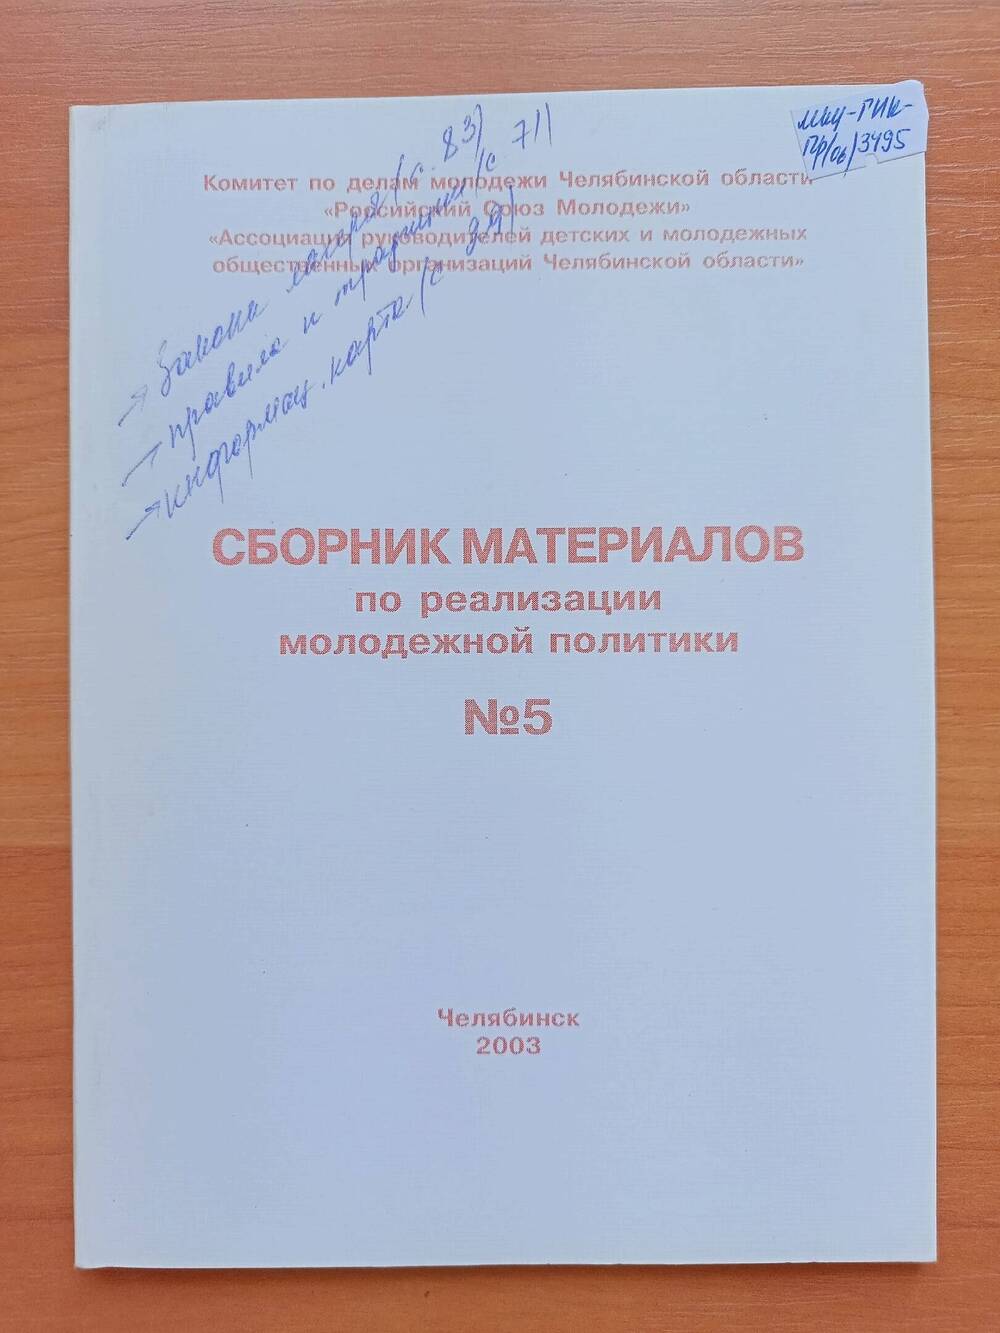 Сборник материалов по реализации молодежной политики. №5. Челябинск, 2003г.84с.